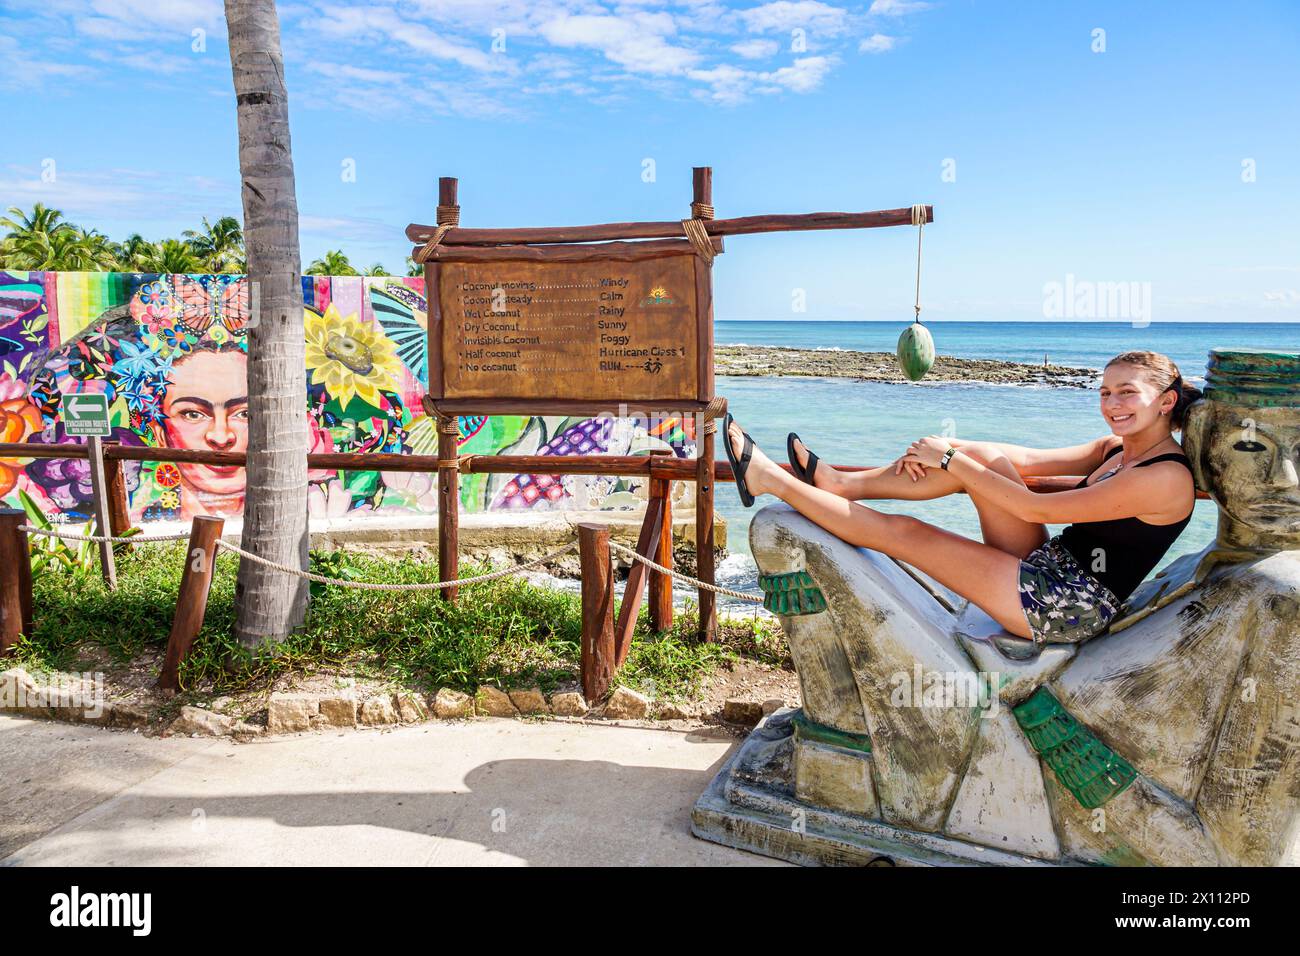 Costa Maya Beach Mexique, Port de croisière, navire Norwegian Joy Cruise Line, itinéraire de 7 jours de la mer des Caraïbes, chac Mool Chacmool inclinable statue masculine maya, femme Banque D'Images